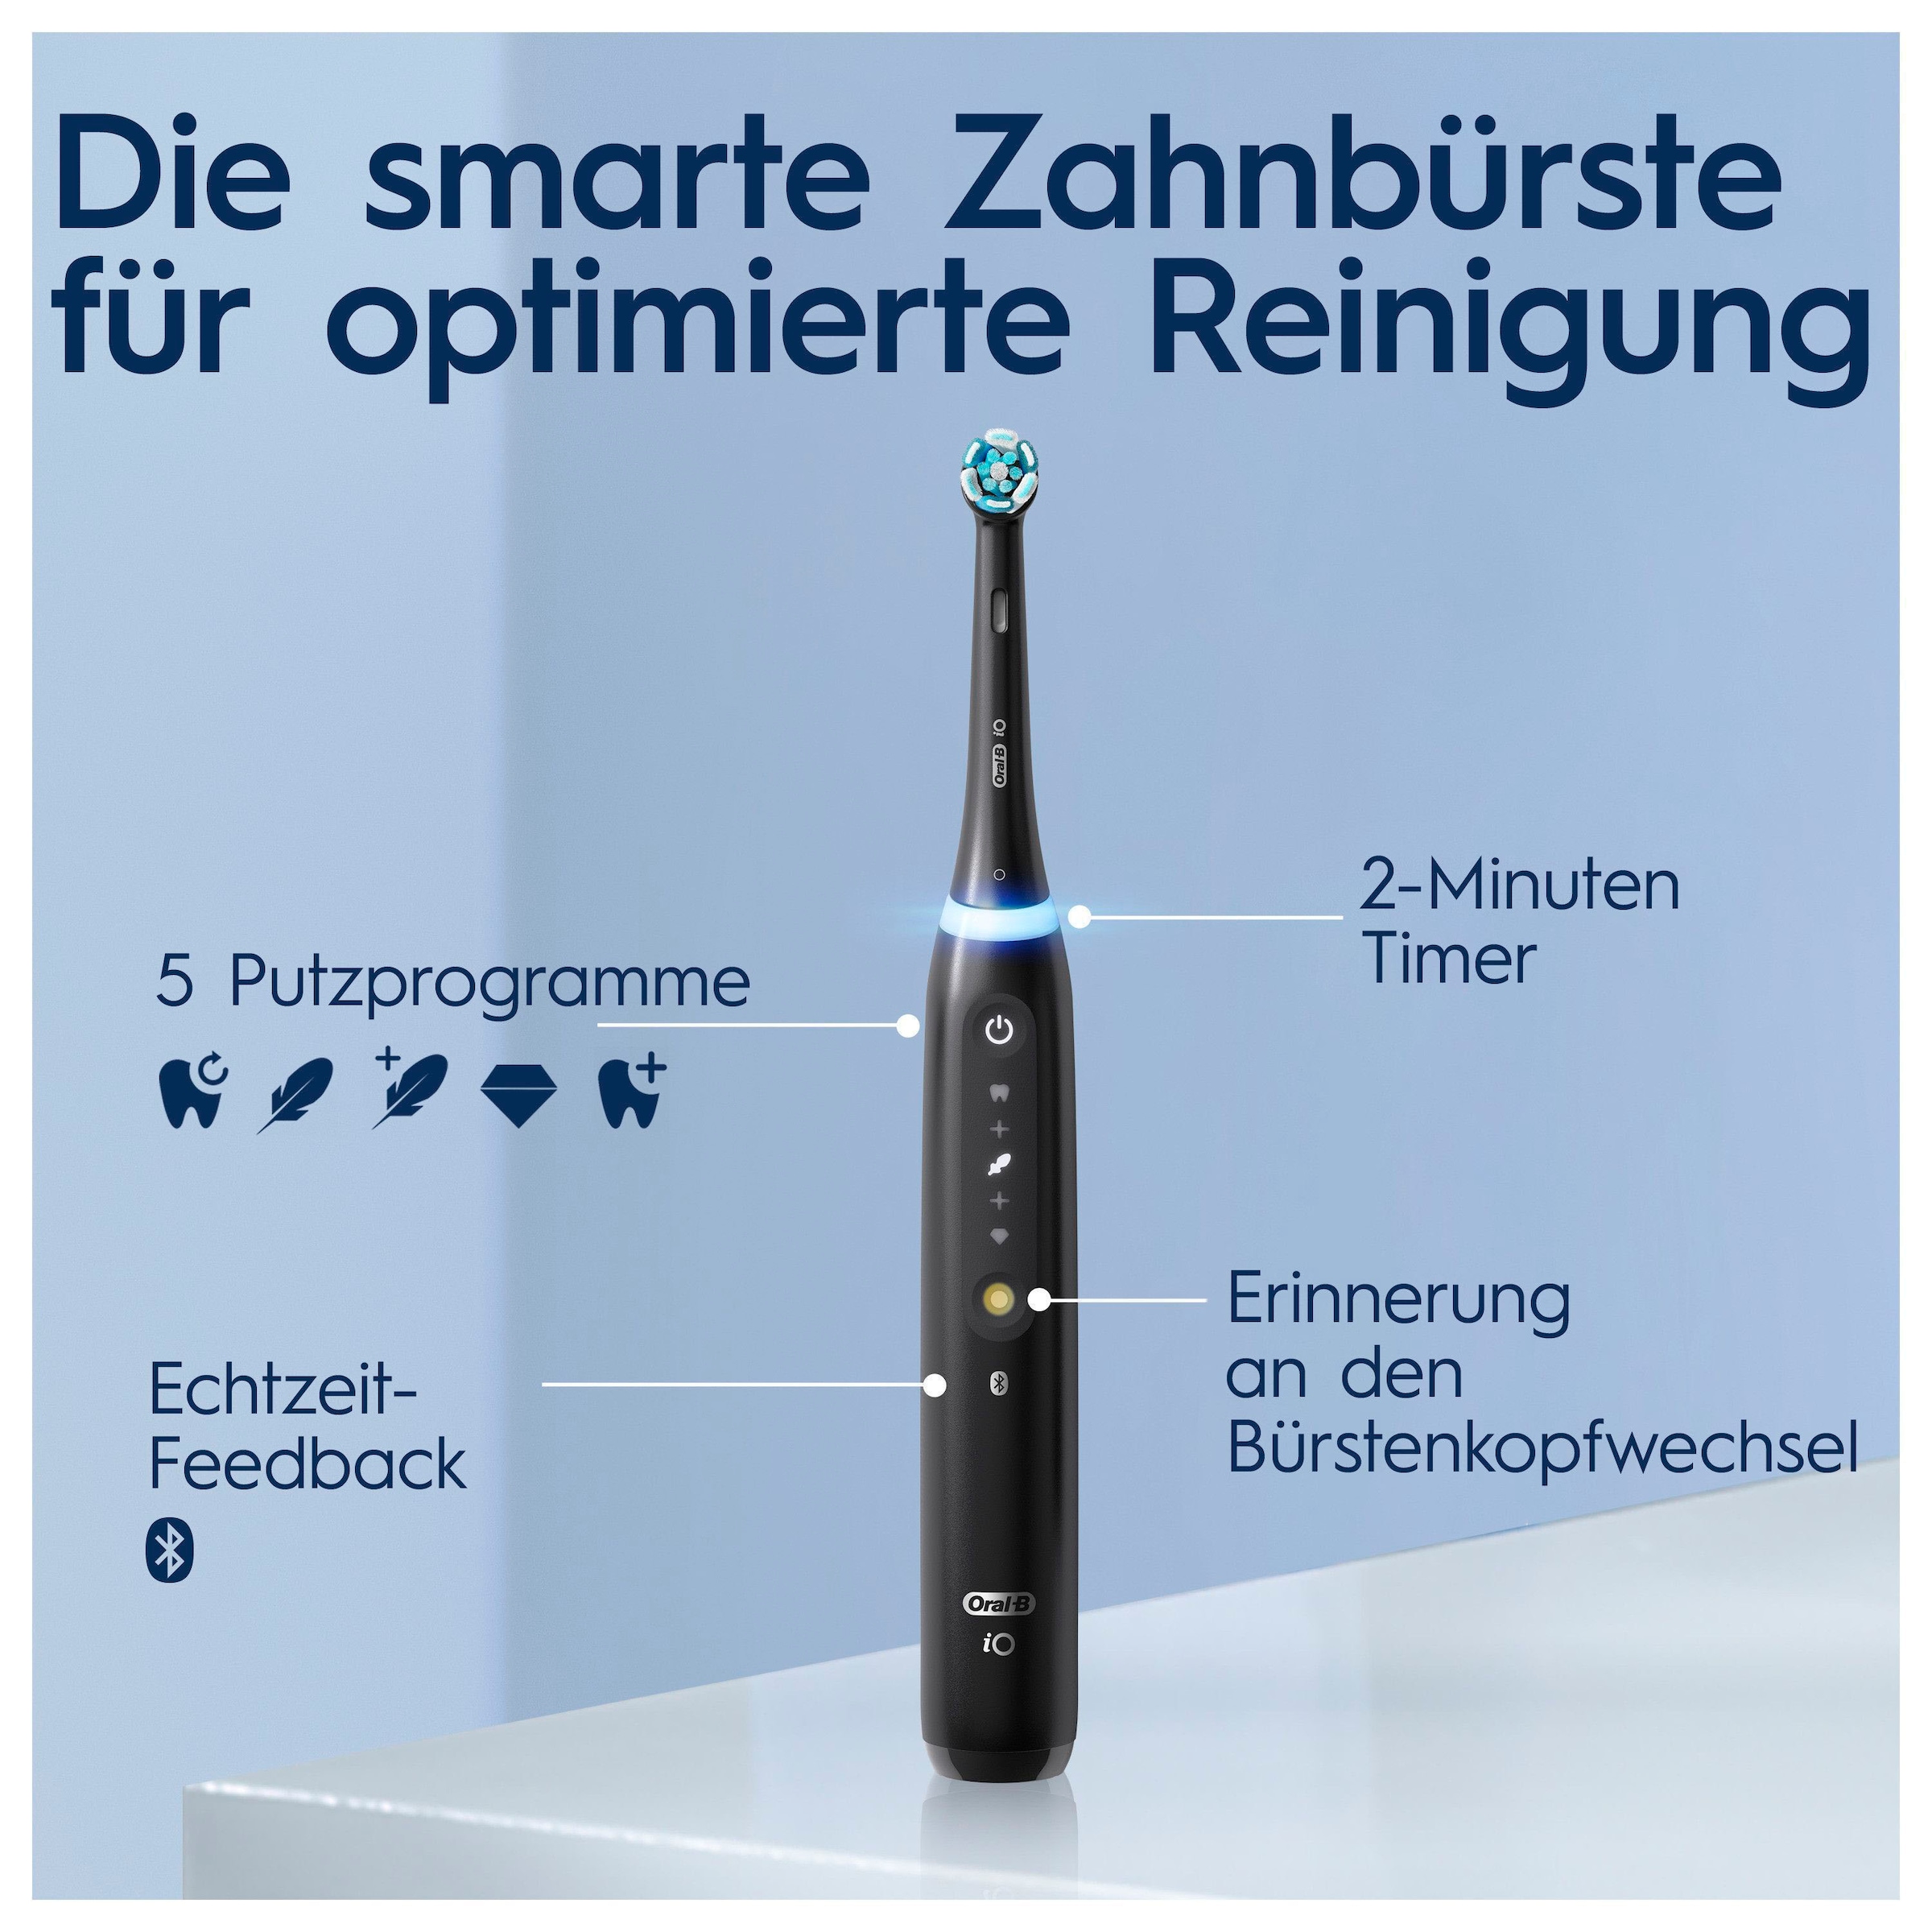 Oral-B Elektrische Zahnbürste »iO 5 Duopack«, 2 St. Aufsteckbürsten, mit Magnet-Technologie, LED-Anzeige, 5 Putzmodi, Reiseetui